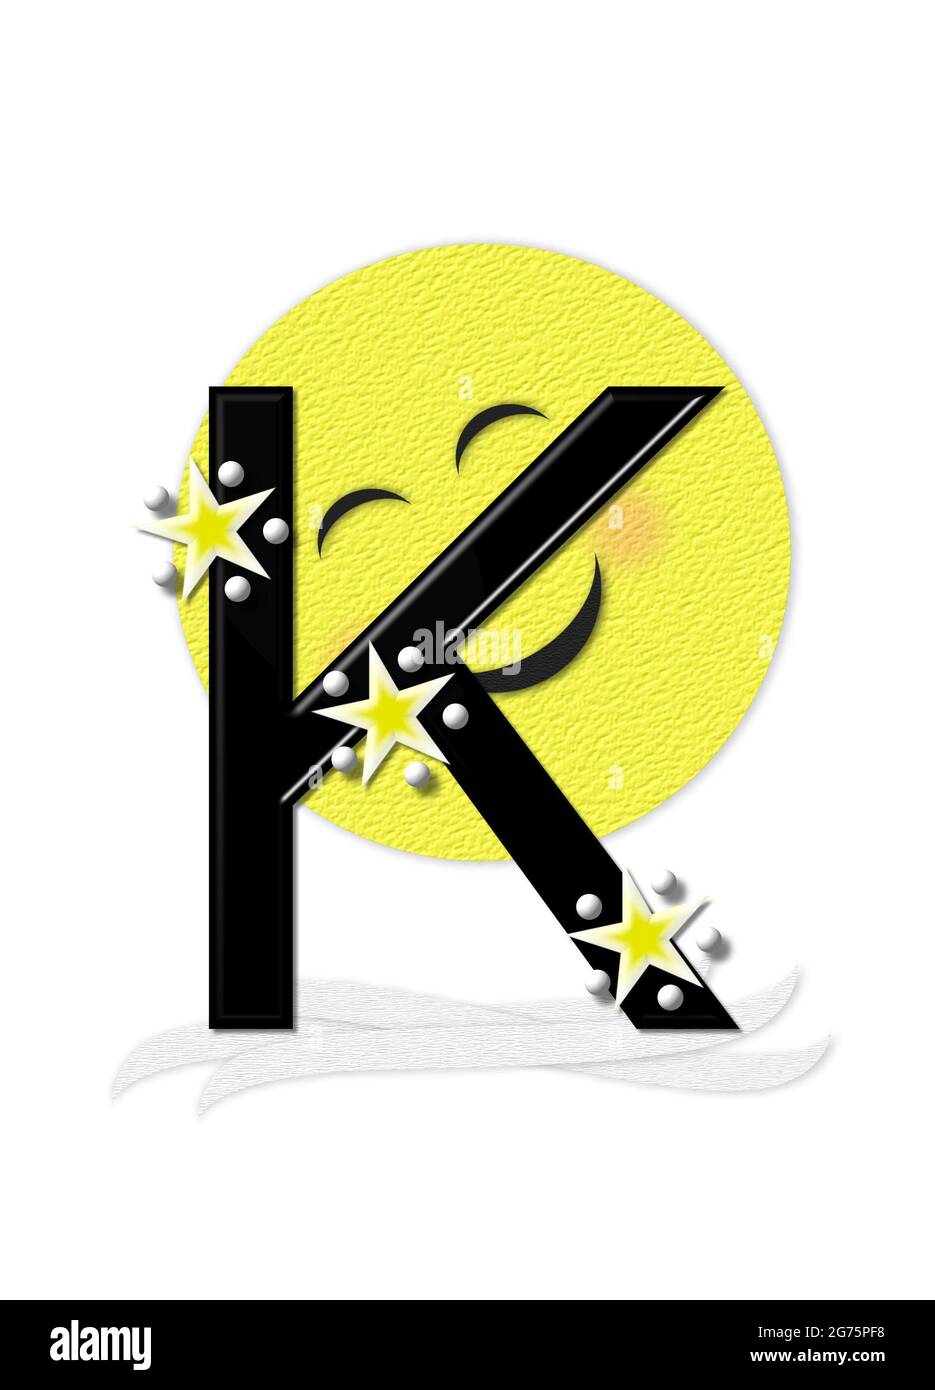 La lettera K, nell'insieme alfabetico 'Moon Beam' è in 3D e nera. Stelle e pois di polka decorano la lettera. Un fascio di luna sorridente sbirra intorno alla lettera. Foto Stock